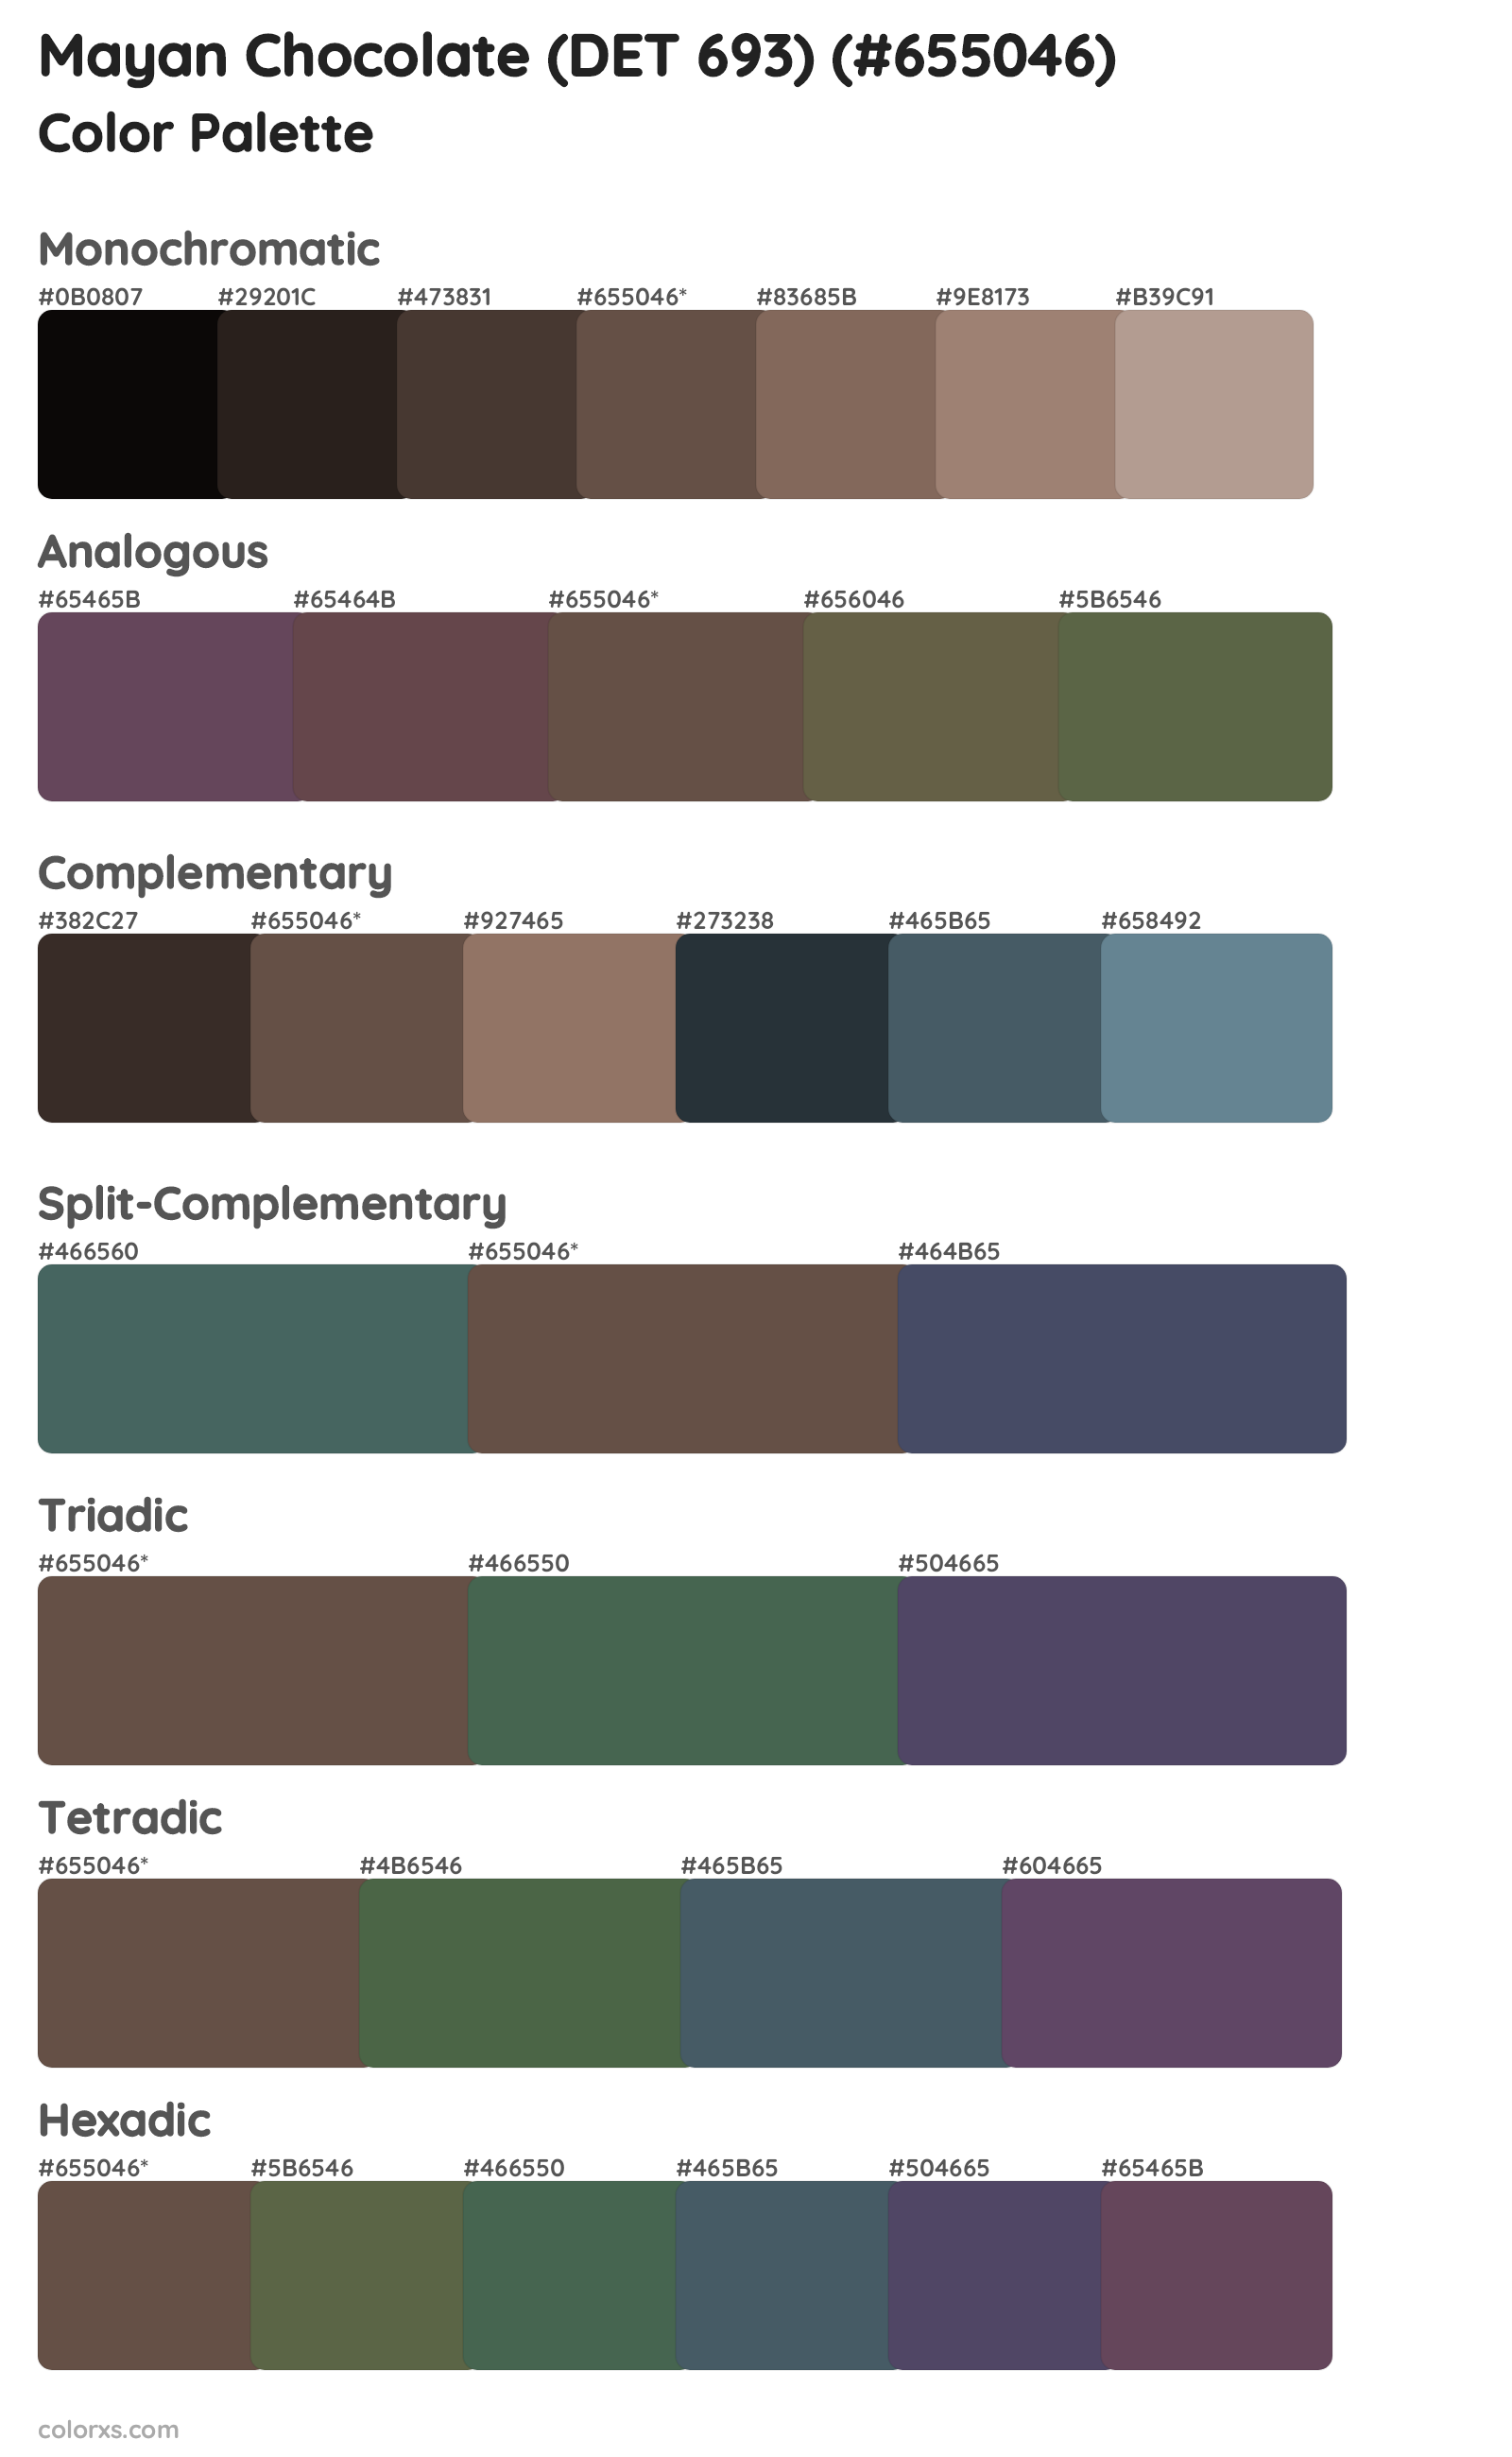 Mayan Chocolate (DET 693) Color Scheme Palettes